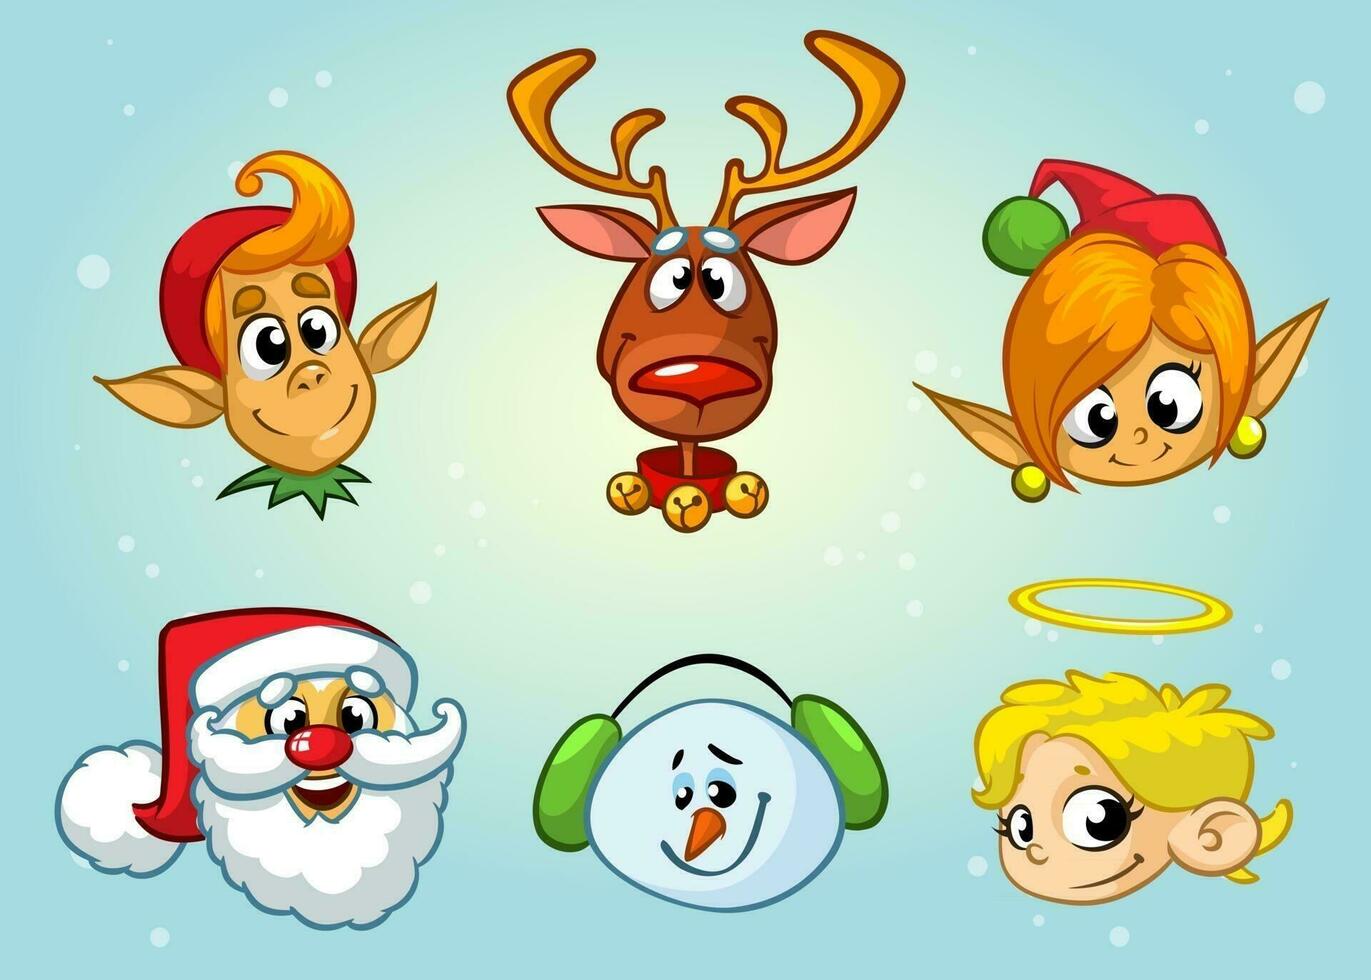 ensemble de Noël personnages. vecteur dessin animé tête Icônes de Père Noël noël, renne, elfe, bonhomme de neige, ange